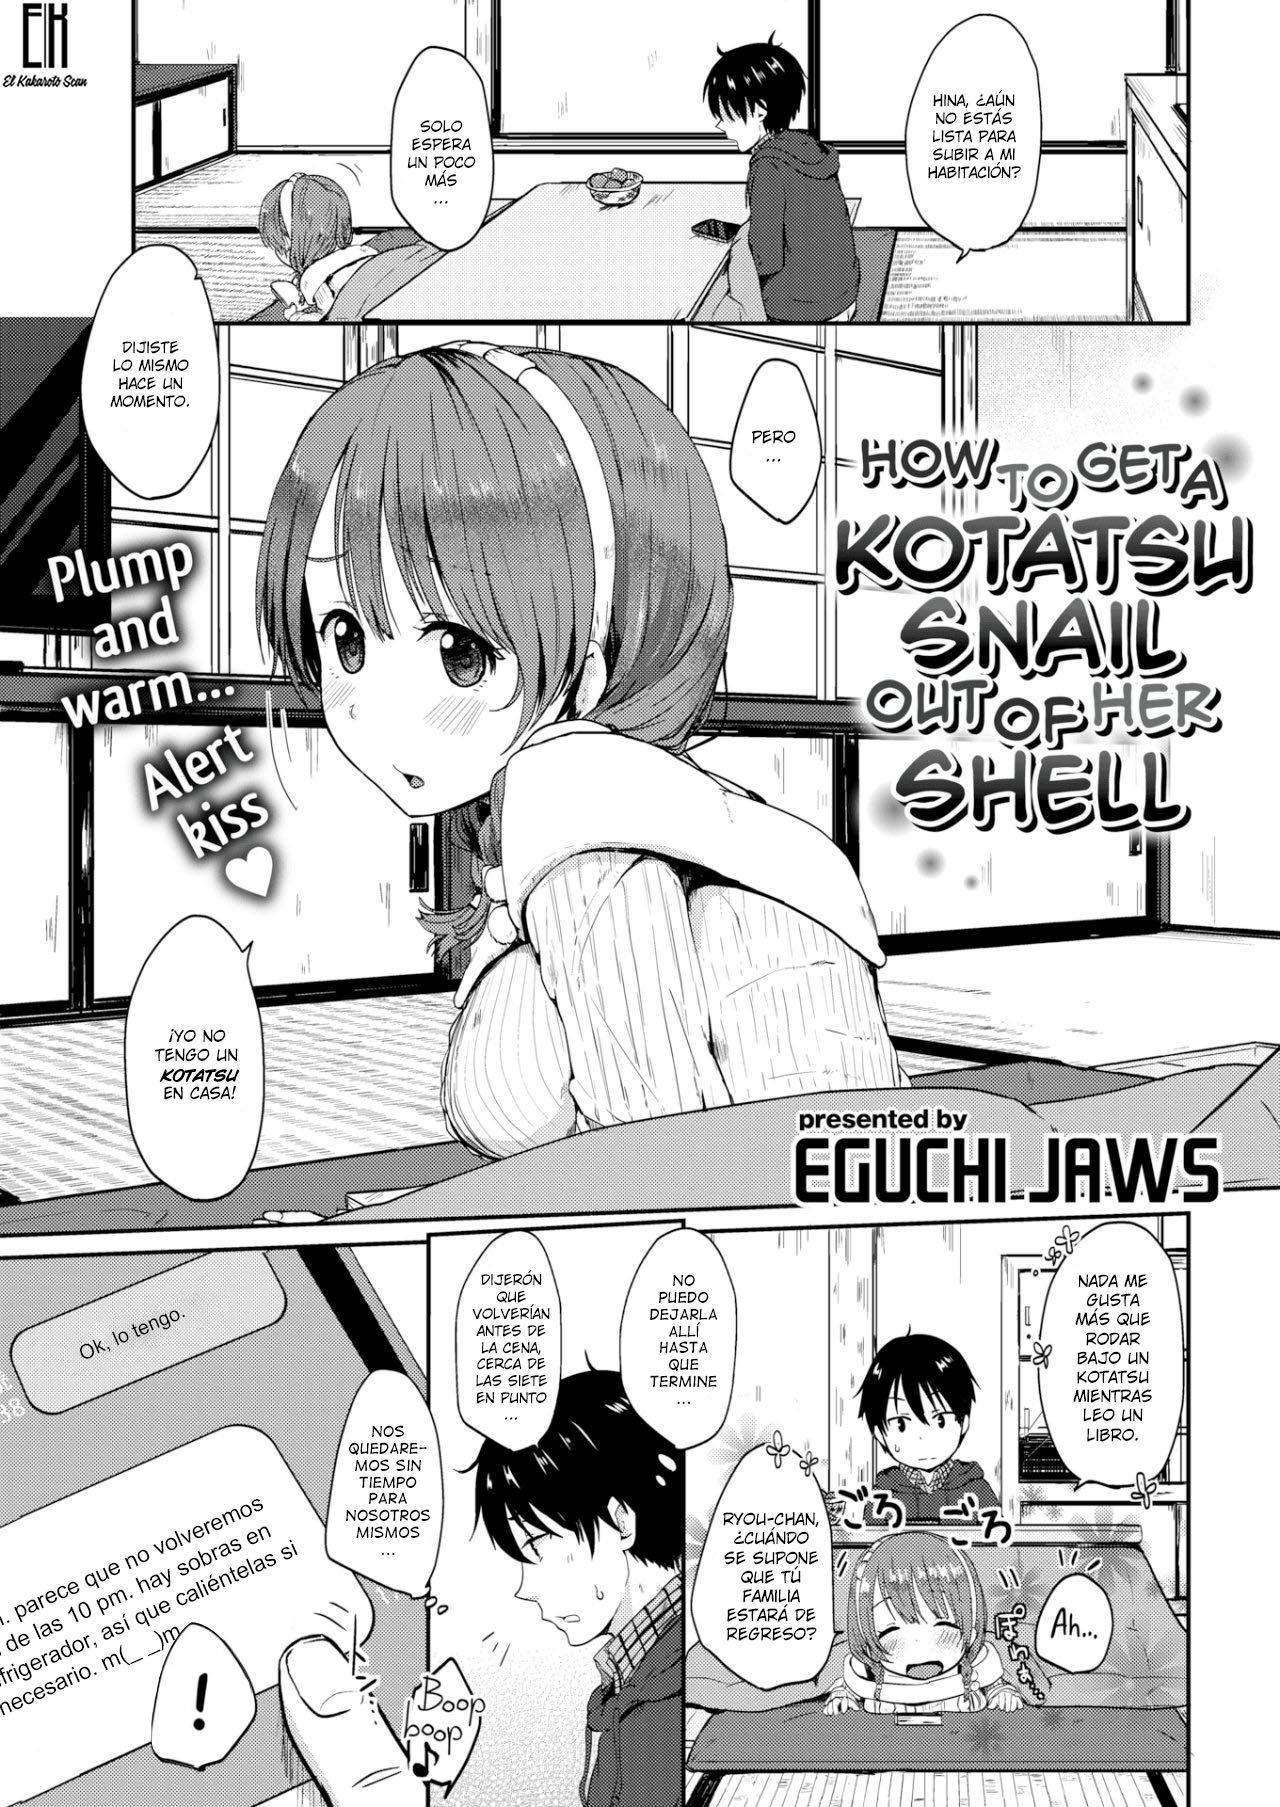 Como sacar a una caracol de su kotatsu - 0